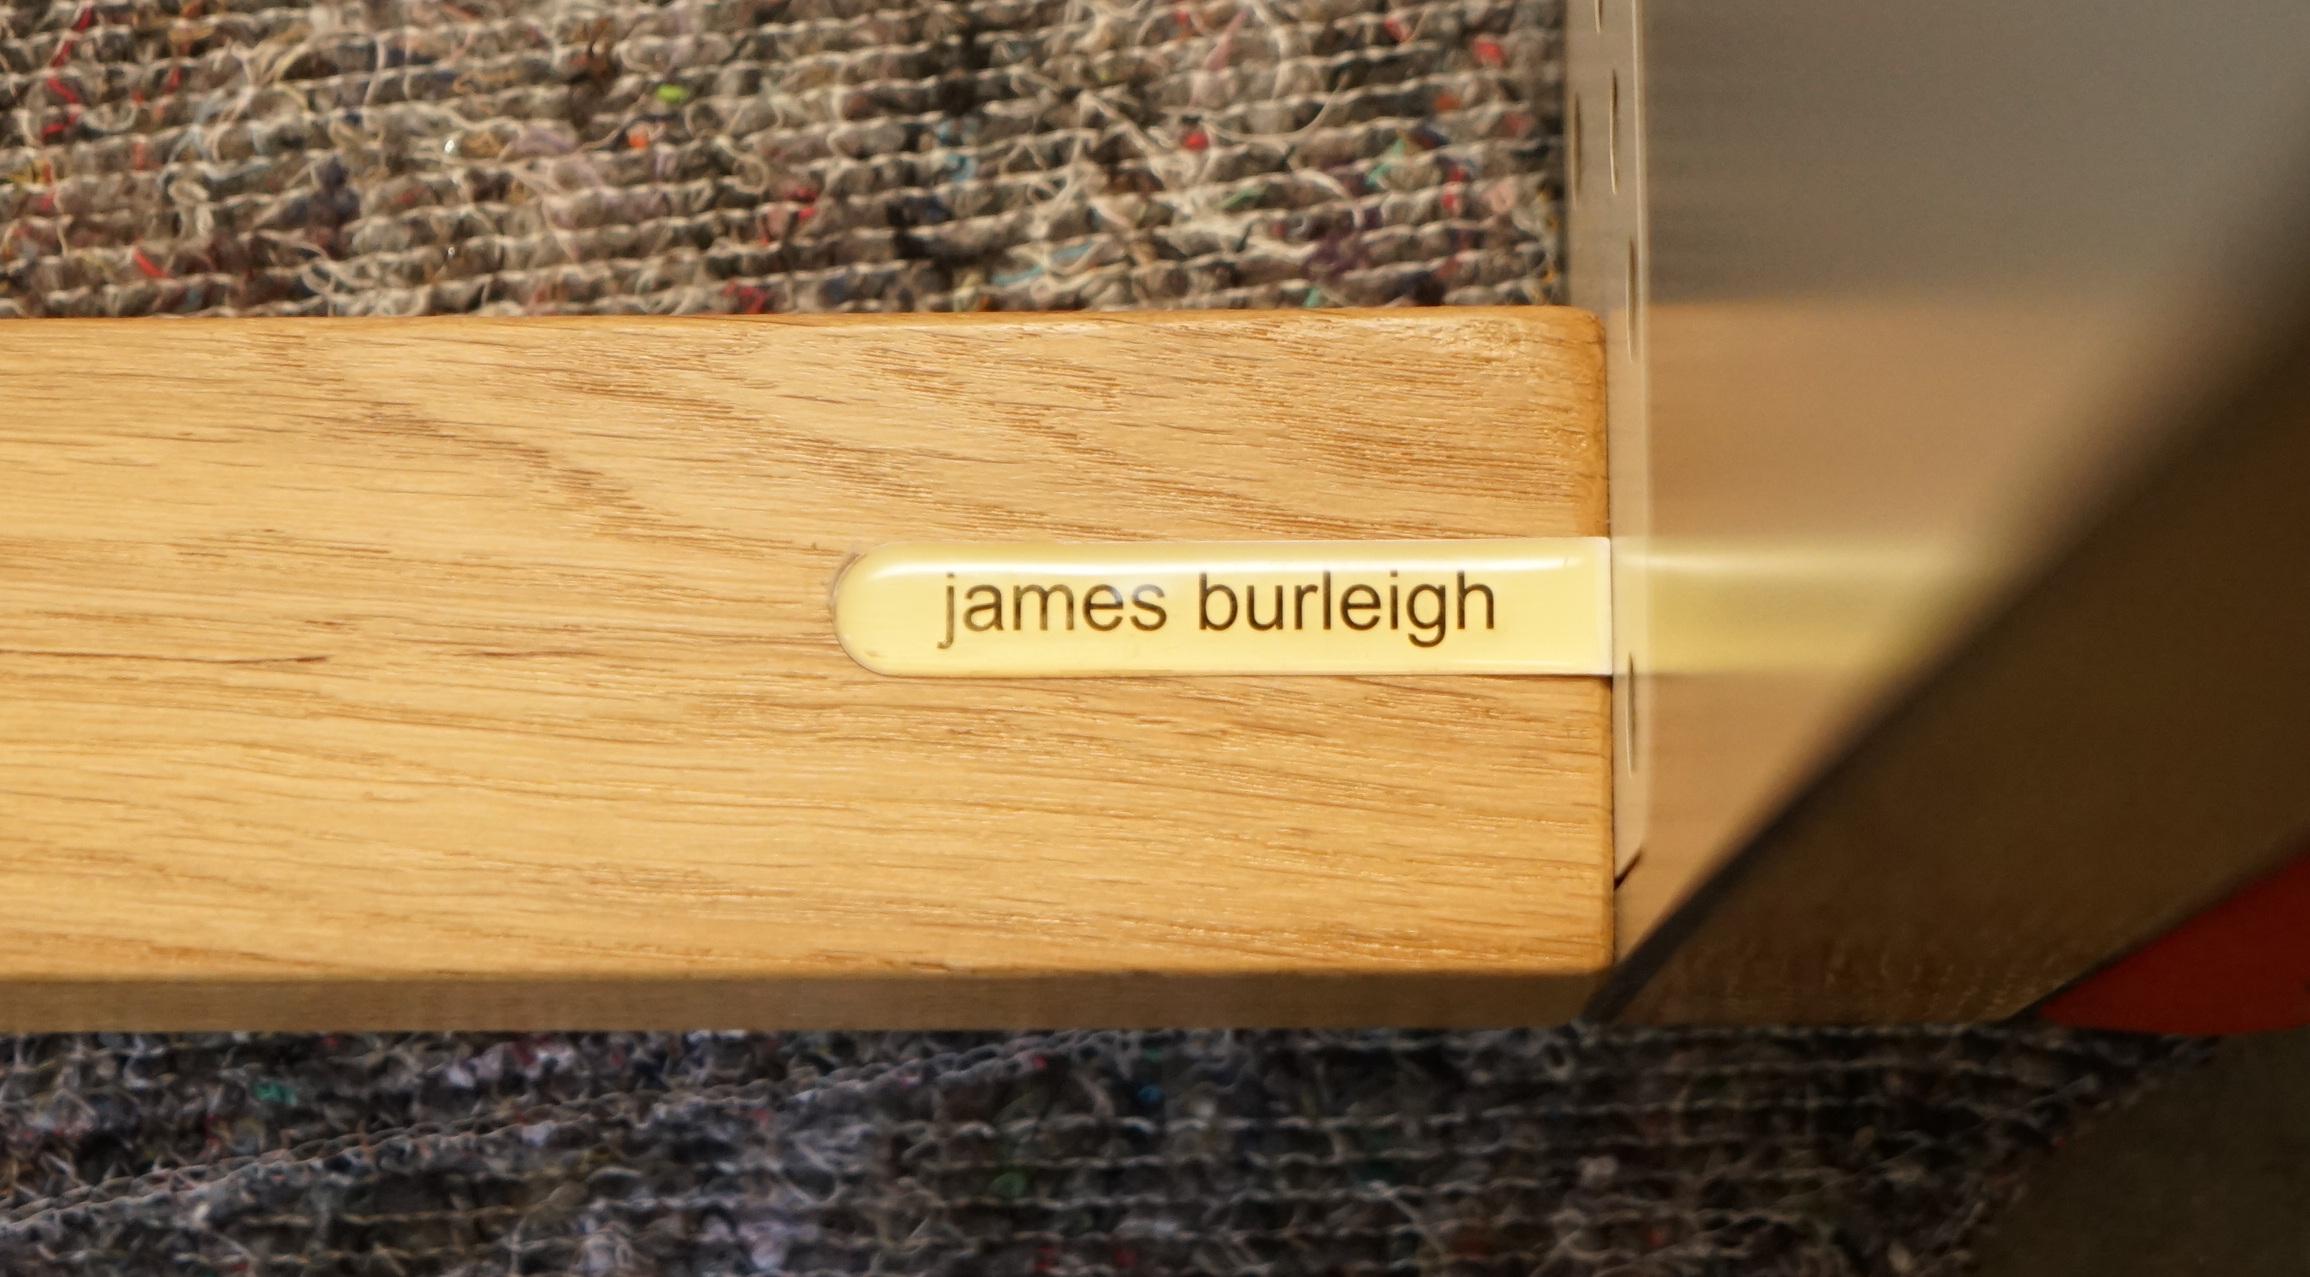 Nous sommes ravis de proposer à la vente ce joli banc de table de cuisine en chêne James Burleigh Bosa, fabriqué à la main en Angleterre, qui fait partie d'une énorme suite.

J'en ai 31 en stock, ils sont disponibles en gris clair, gris foncé et